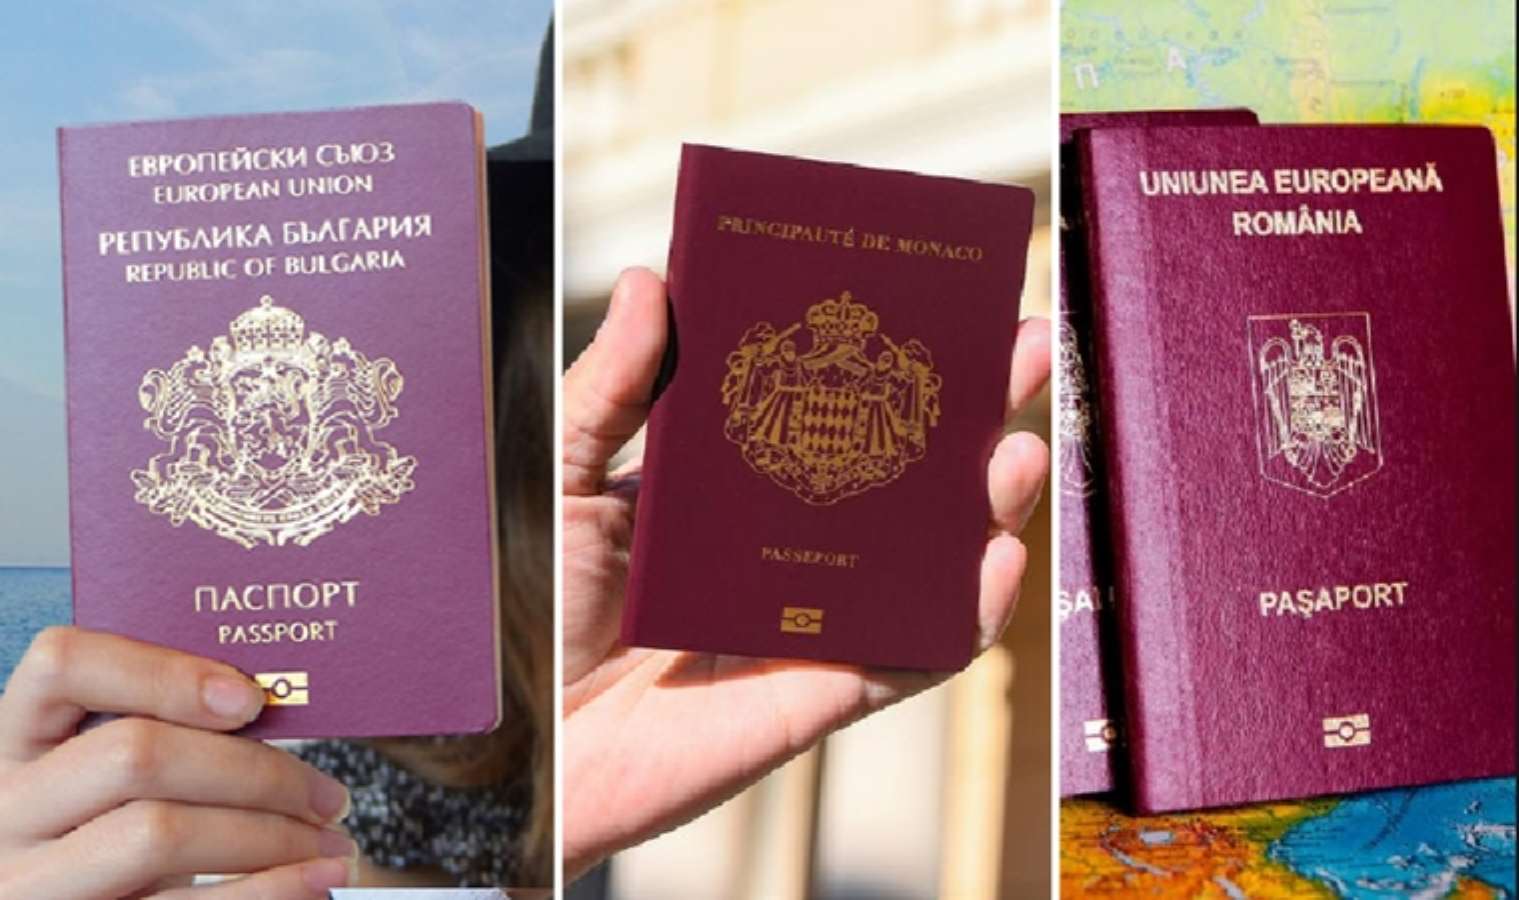 <p>16. BULGARİSTAN, MONAKO, ROMANYA</p>
<p>Vatandaşlarının vizesiz gidebildiği ülke sayısı: 176</p>